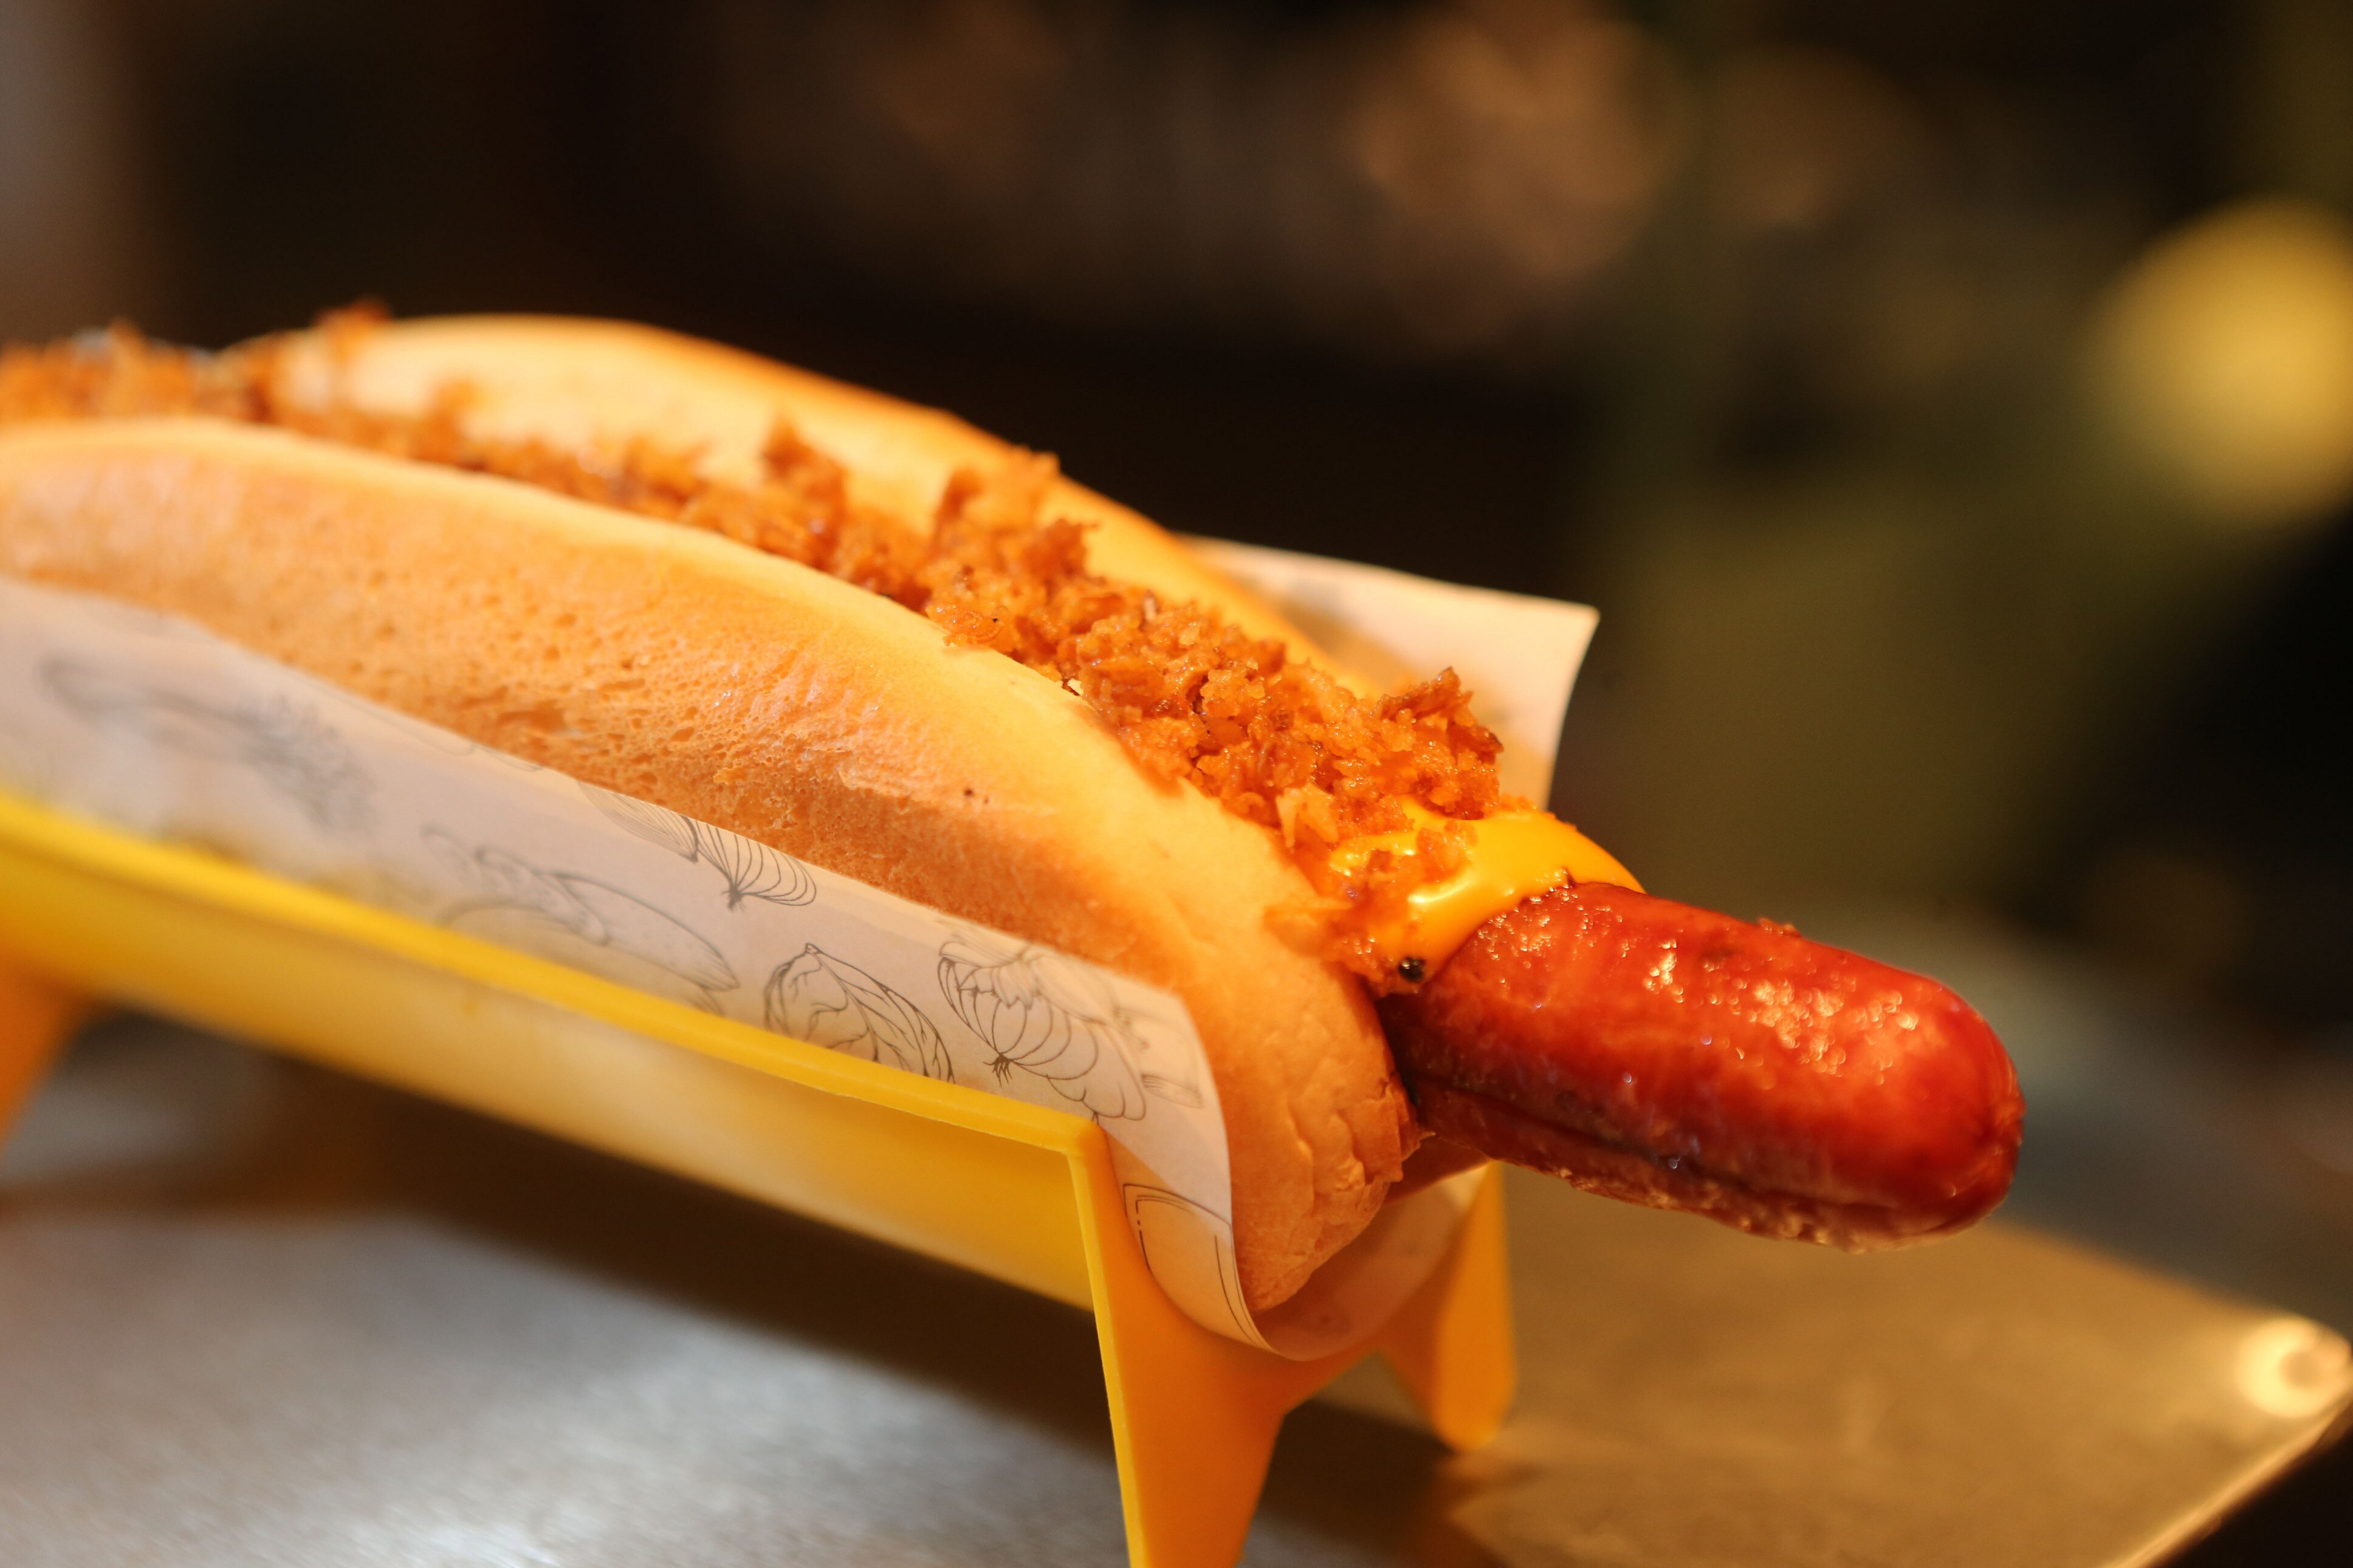 Hot Dog de Linguicinha com Molho Cremoso de Queijo e Cebola